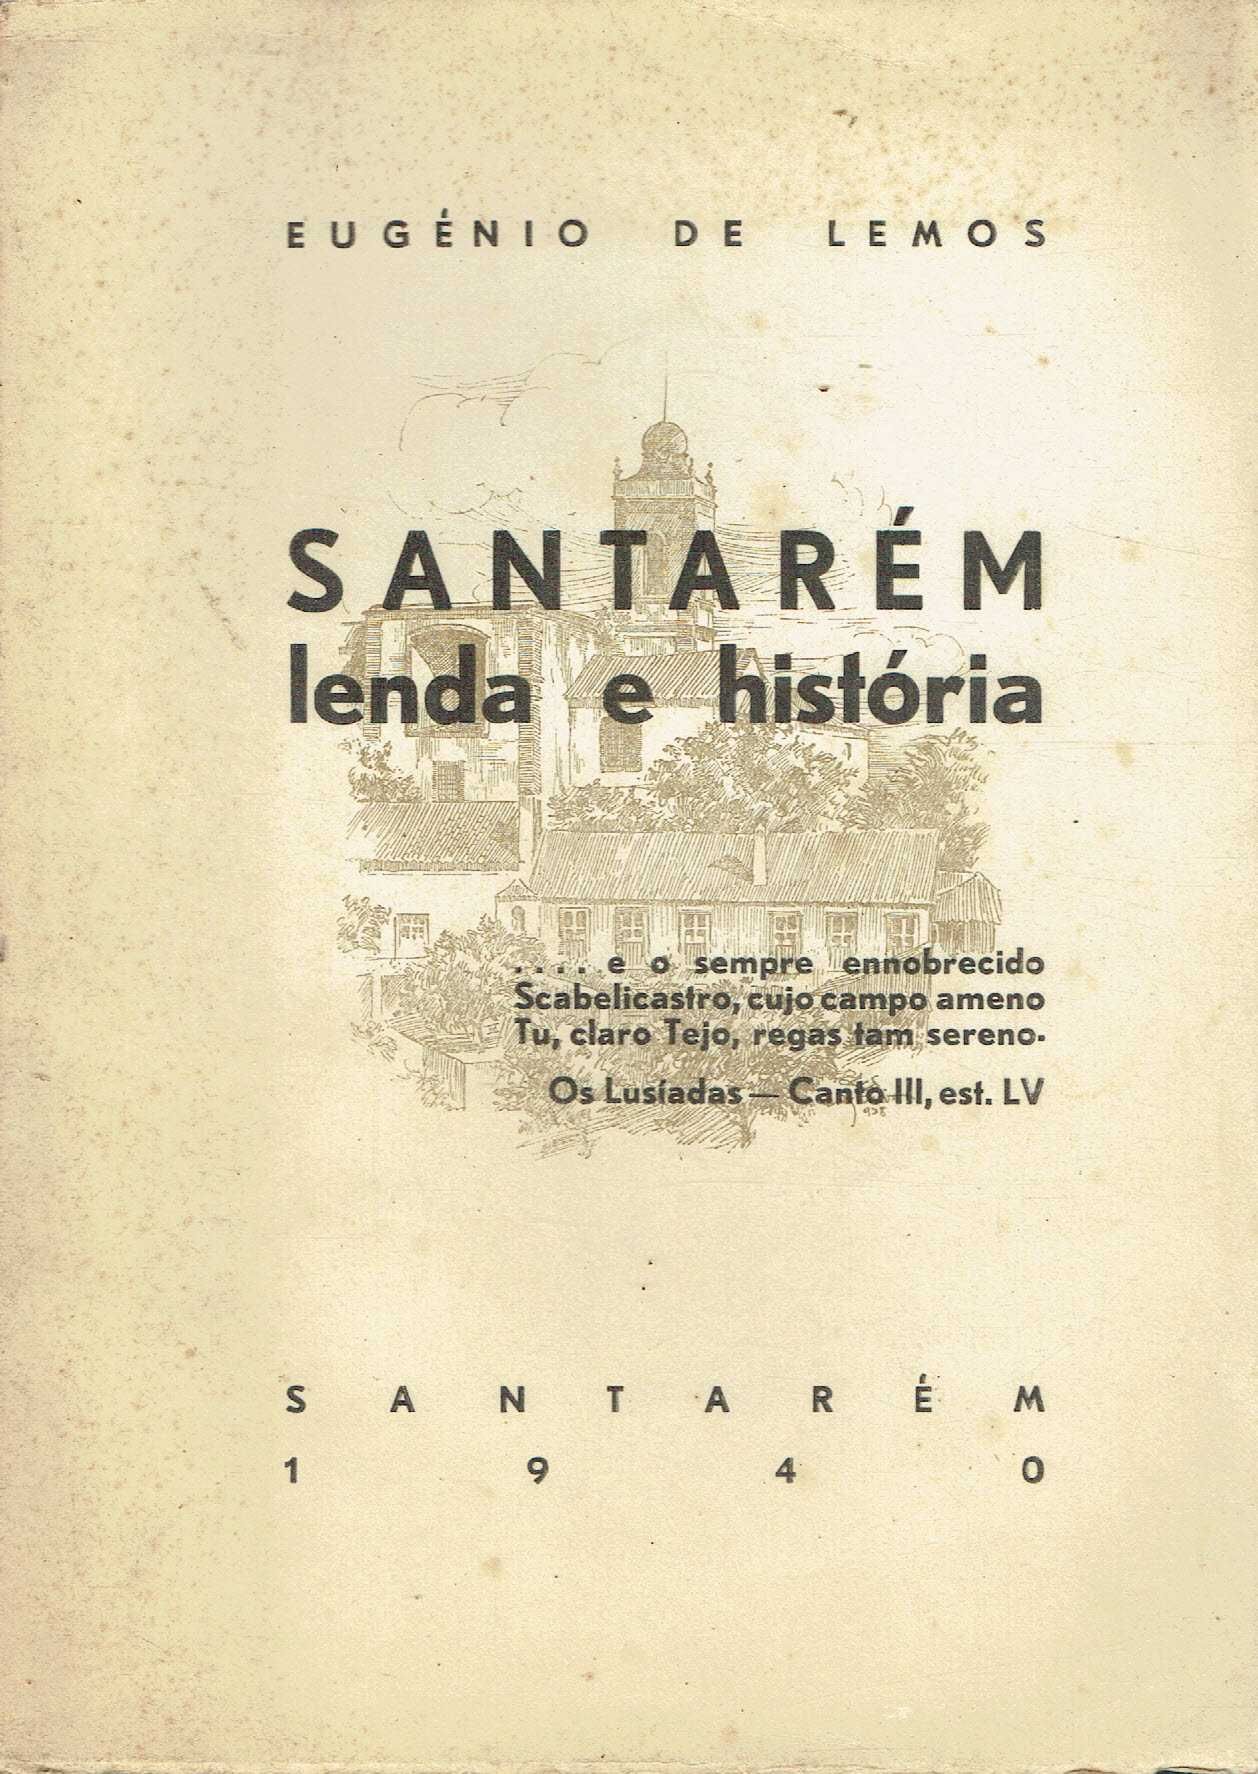 2535
	
Santarém : lenda e história  
de Eugénio de Lemos